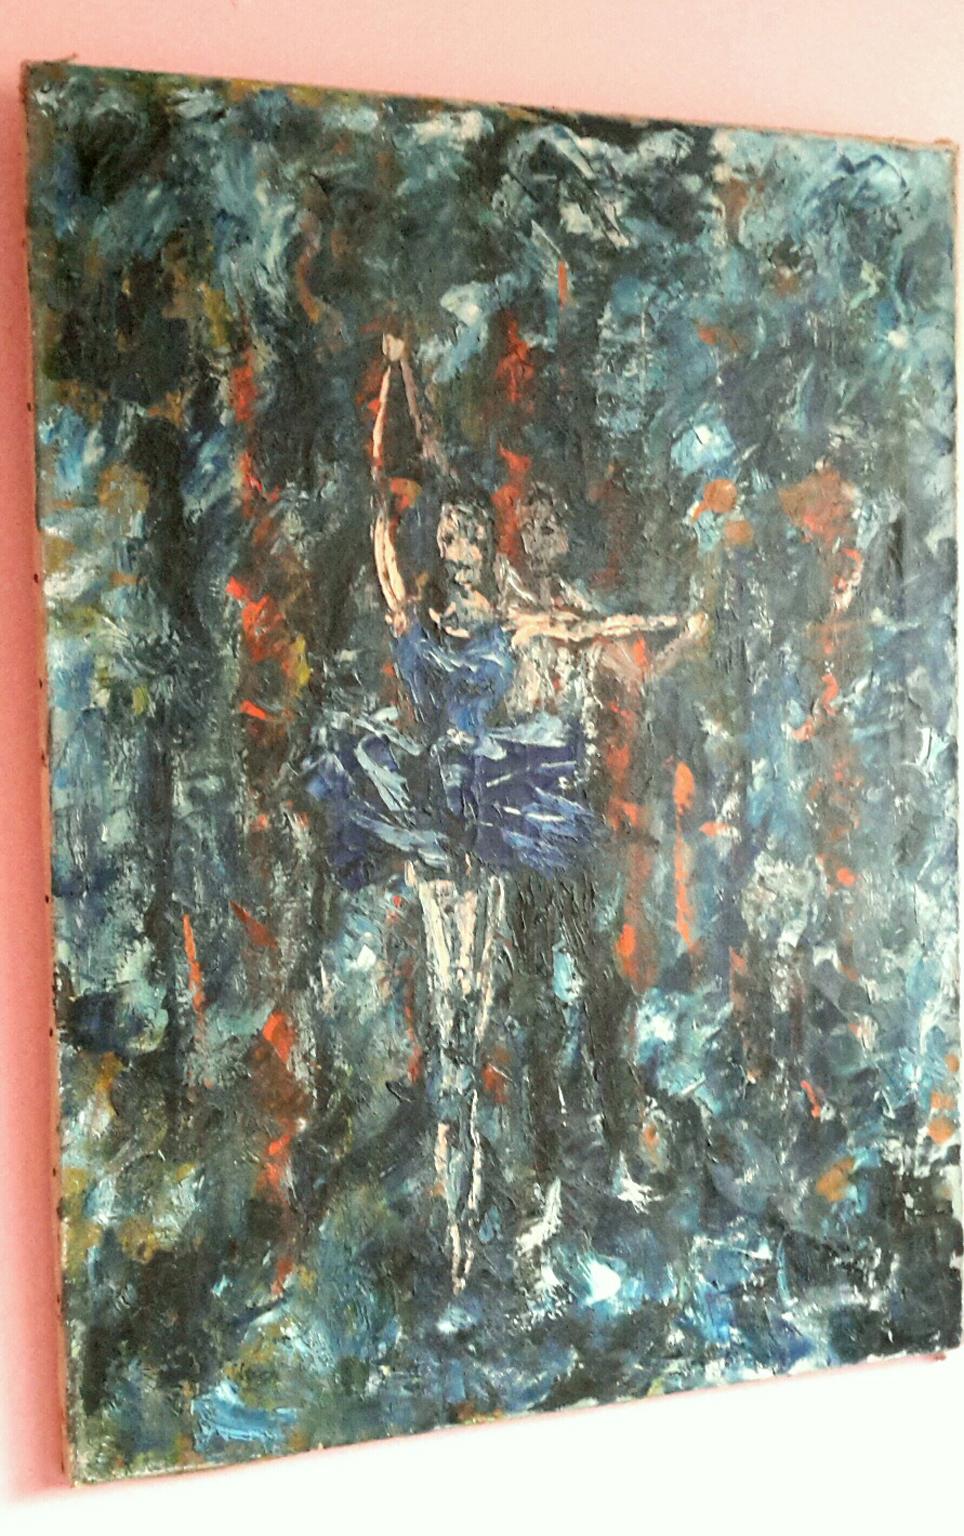 Großes belgisches Öl auf Leinwand im Stil des Expressionismus des frühen 20. Jahrhunderts, das eine symbolistische Szene mit einem Ballettpaar in einem brennenden Wald zeigt.
Das Gemälde ist auf der Rückseite signiert, aber unleserlich, datiert 1932